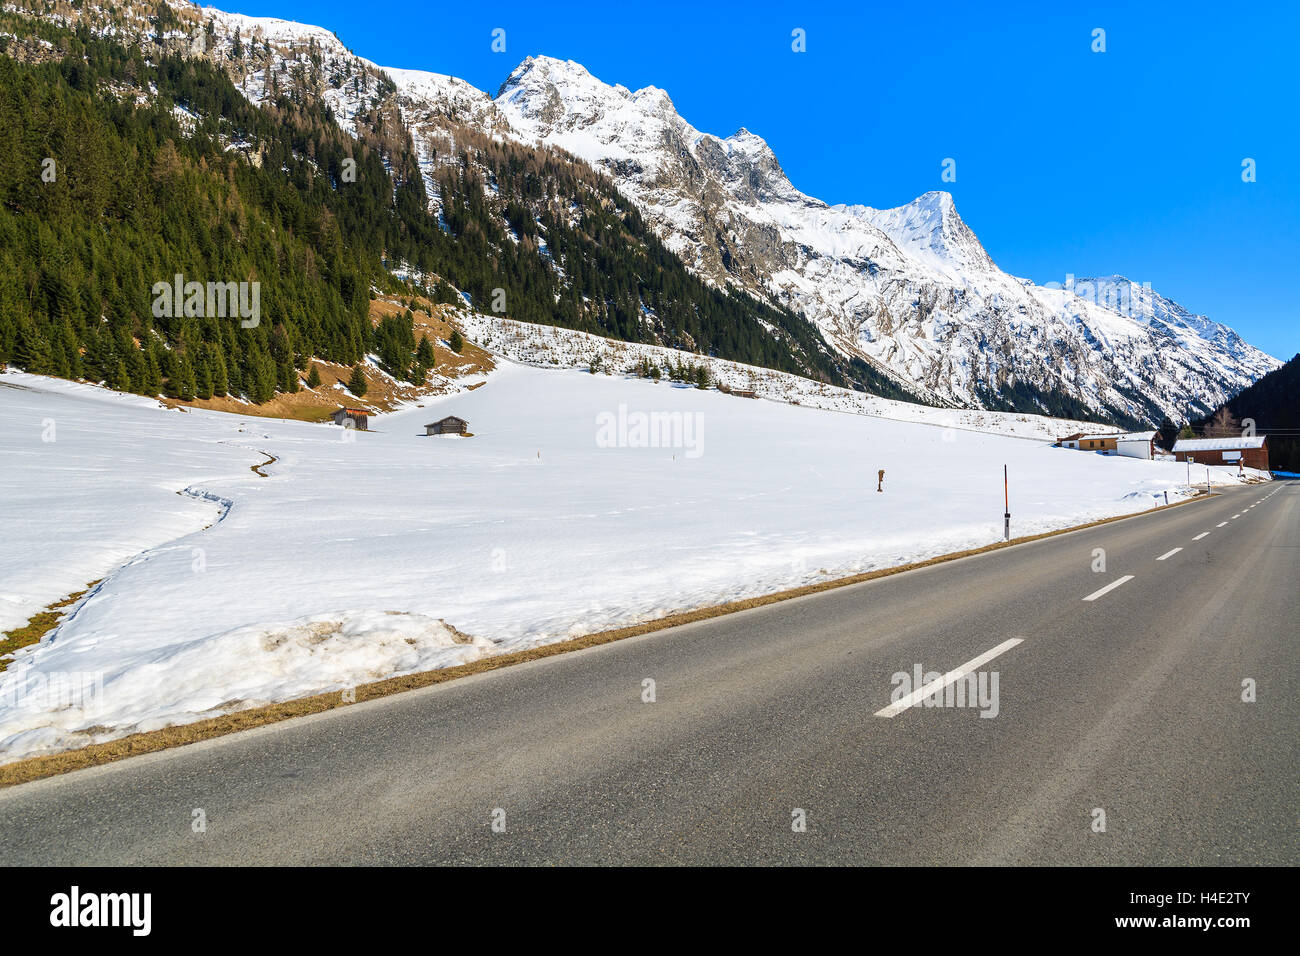 Route dans la vallée de Pitztal couverte de neige, Alpes, Autriche Banque D'Images